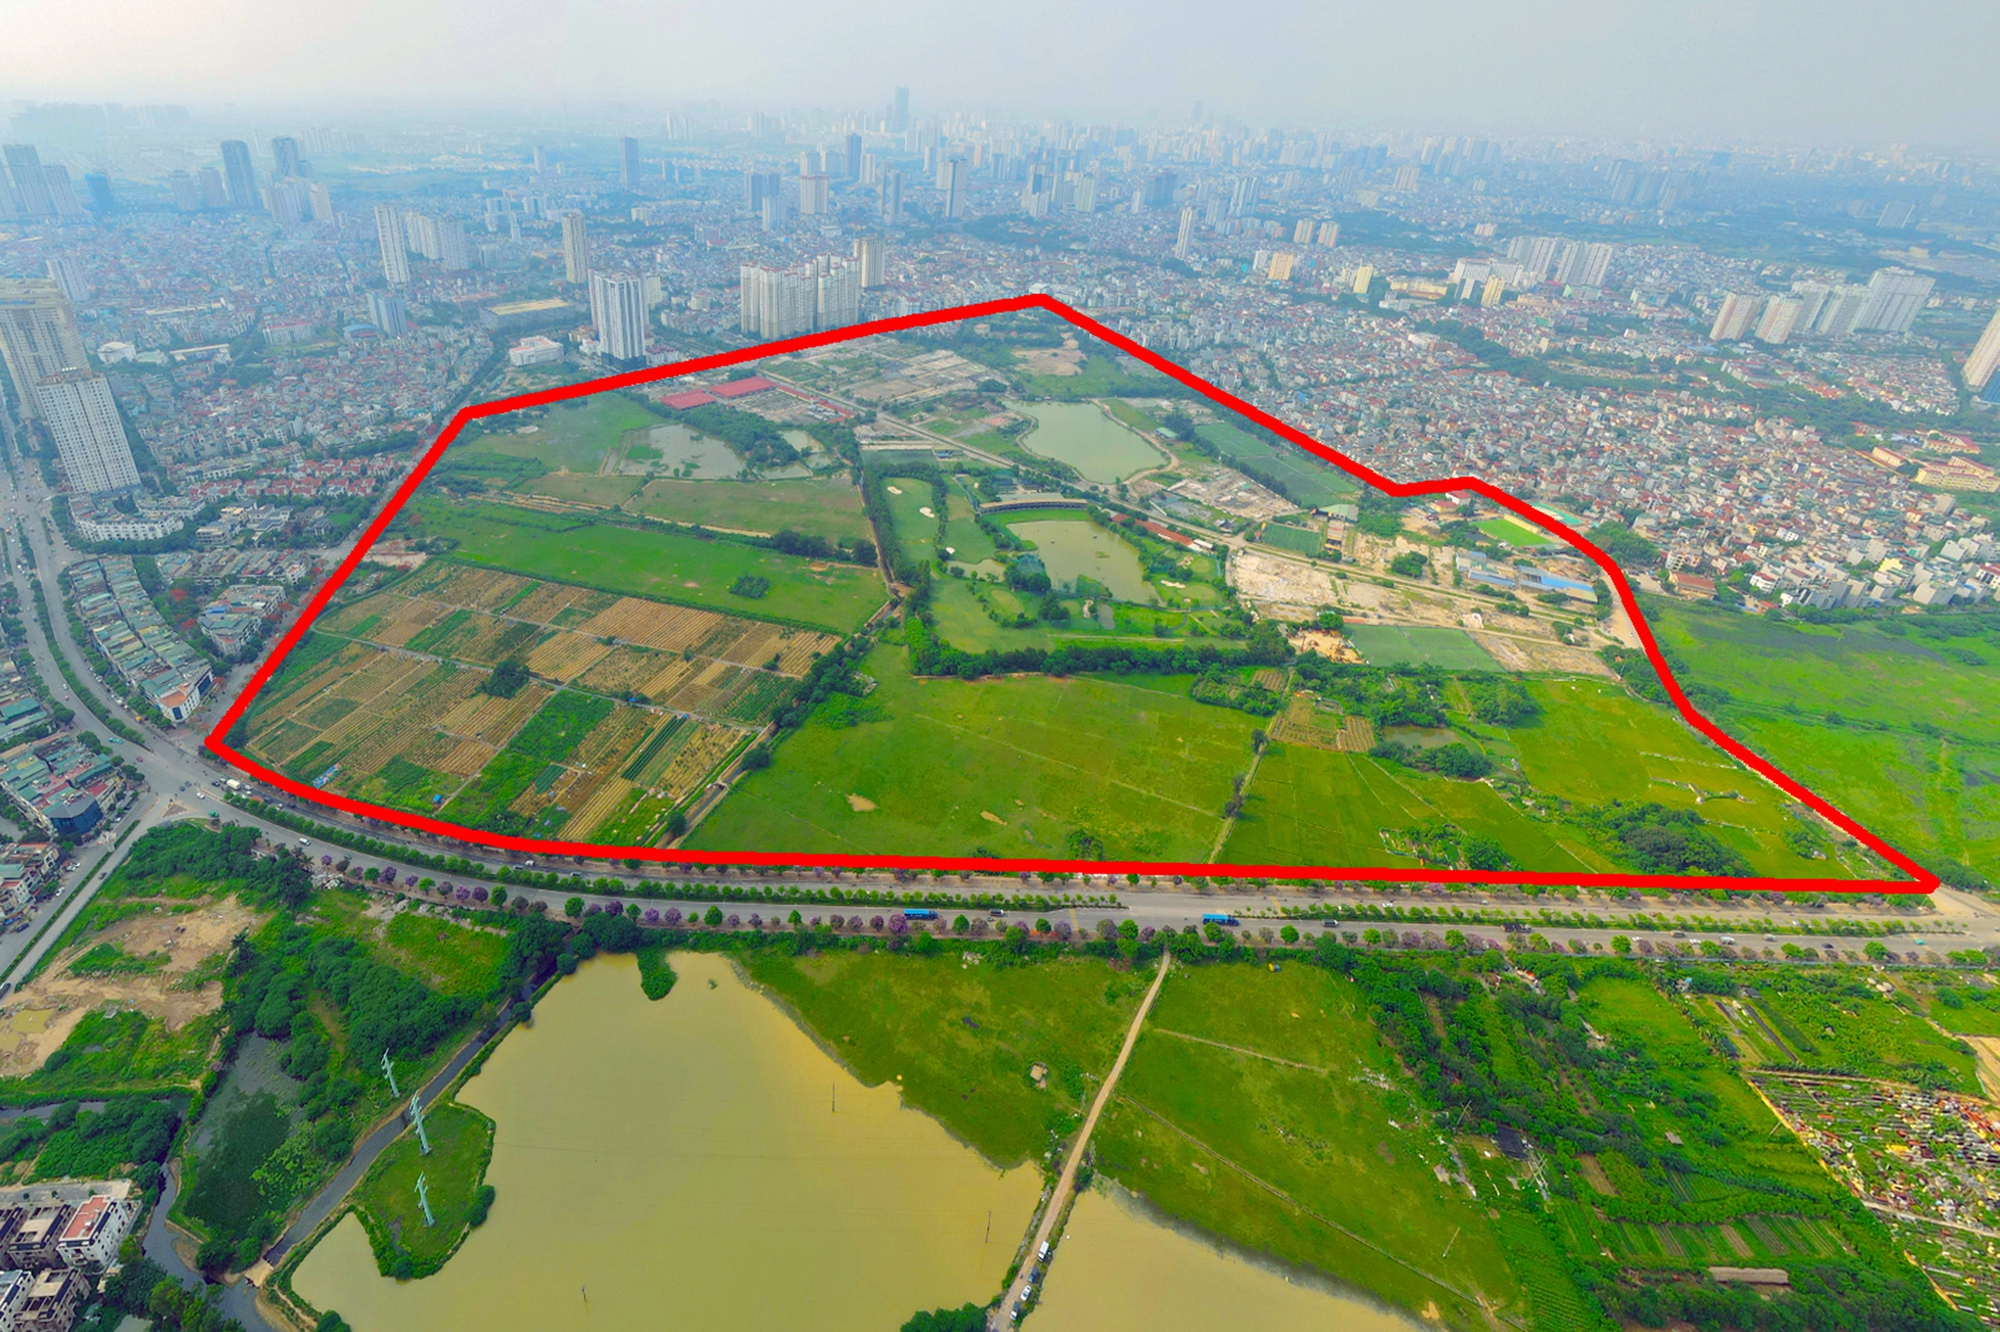 Khu vực sẽ được đầu tư hơn 1.250 tỷ đồng xây dựng dự án công viên lớn thứ 2 Hà Nội: Gấp đôi công viên Thống Nhất, gấp 5 công viên Hòa Bình- Ảnh 1.